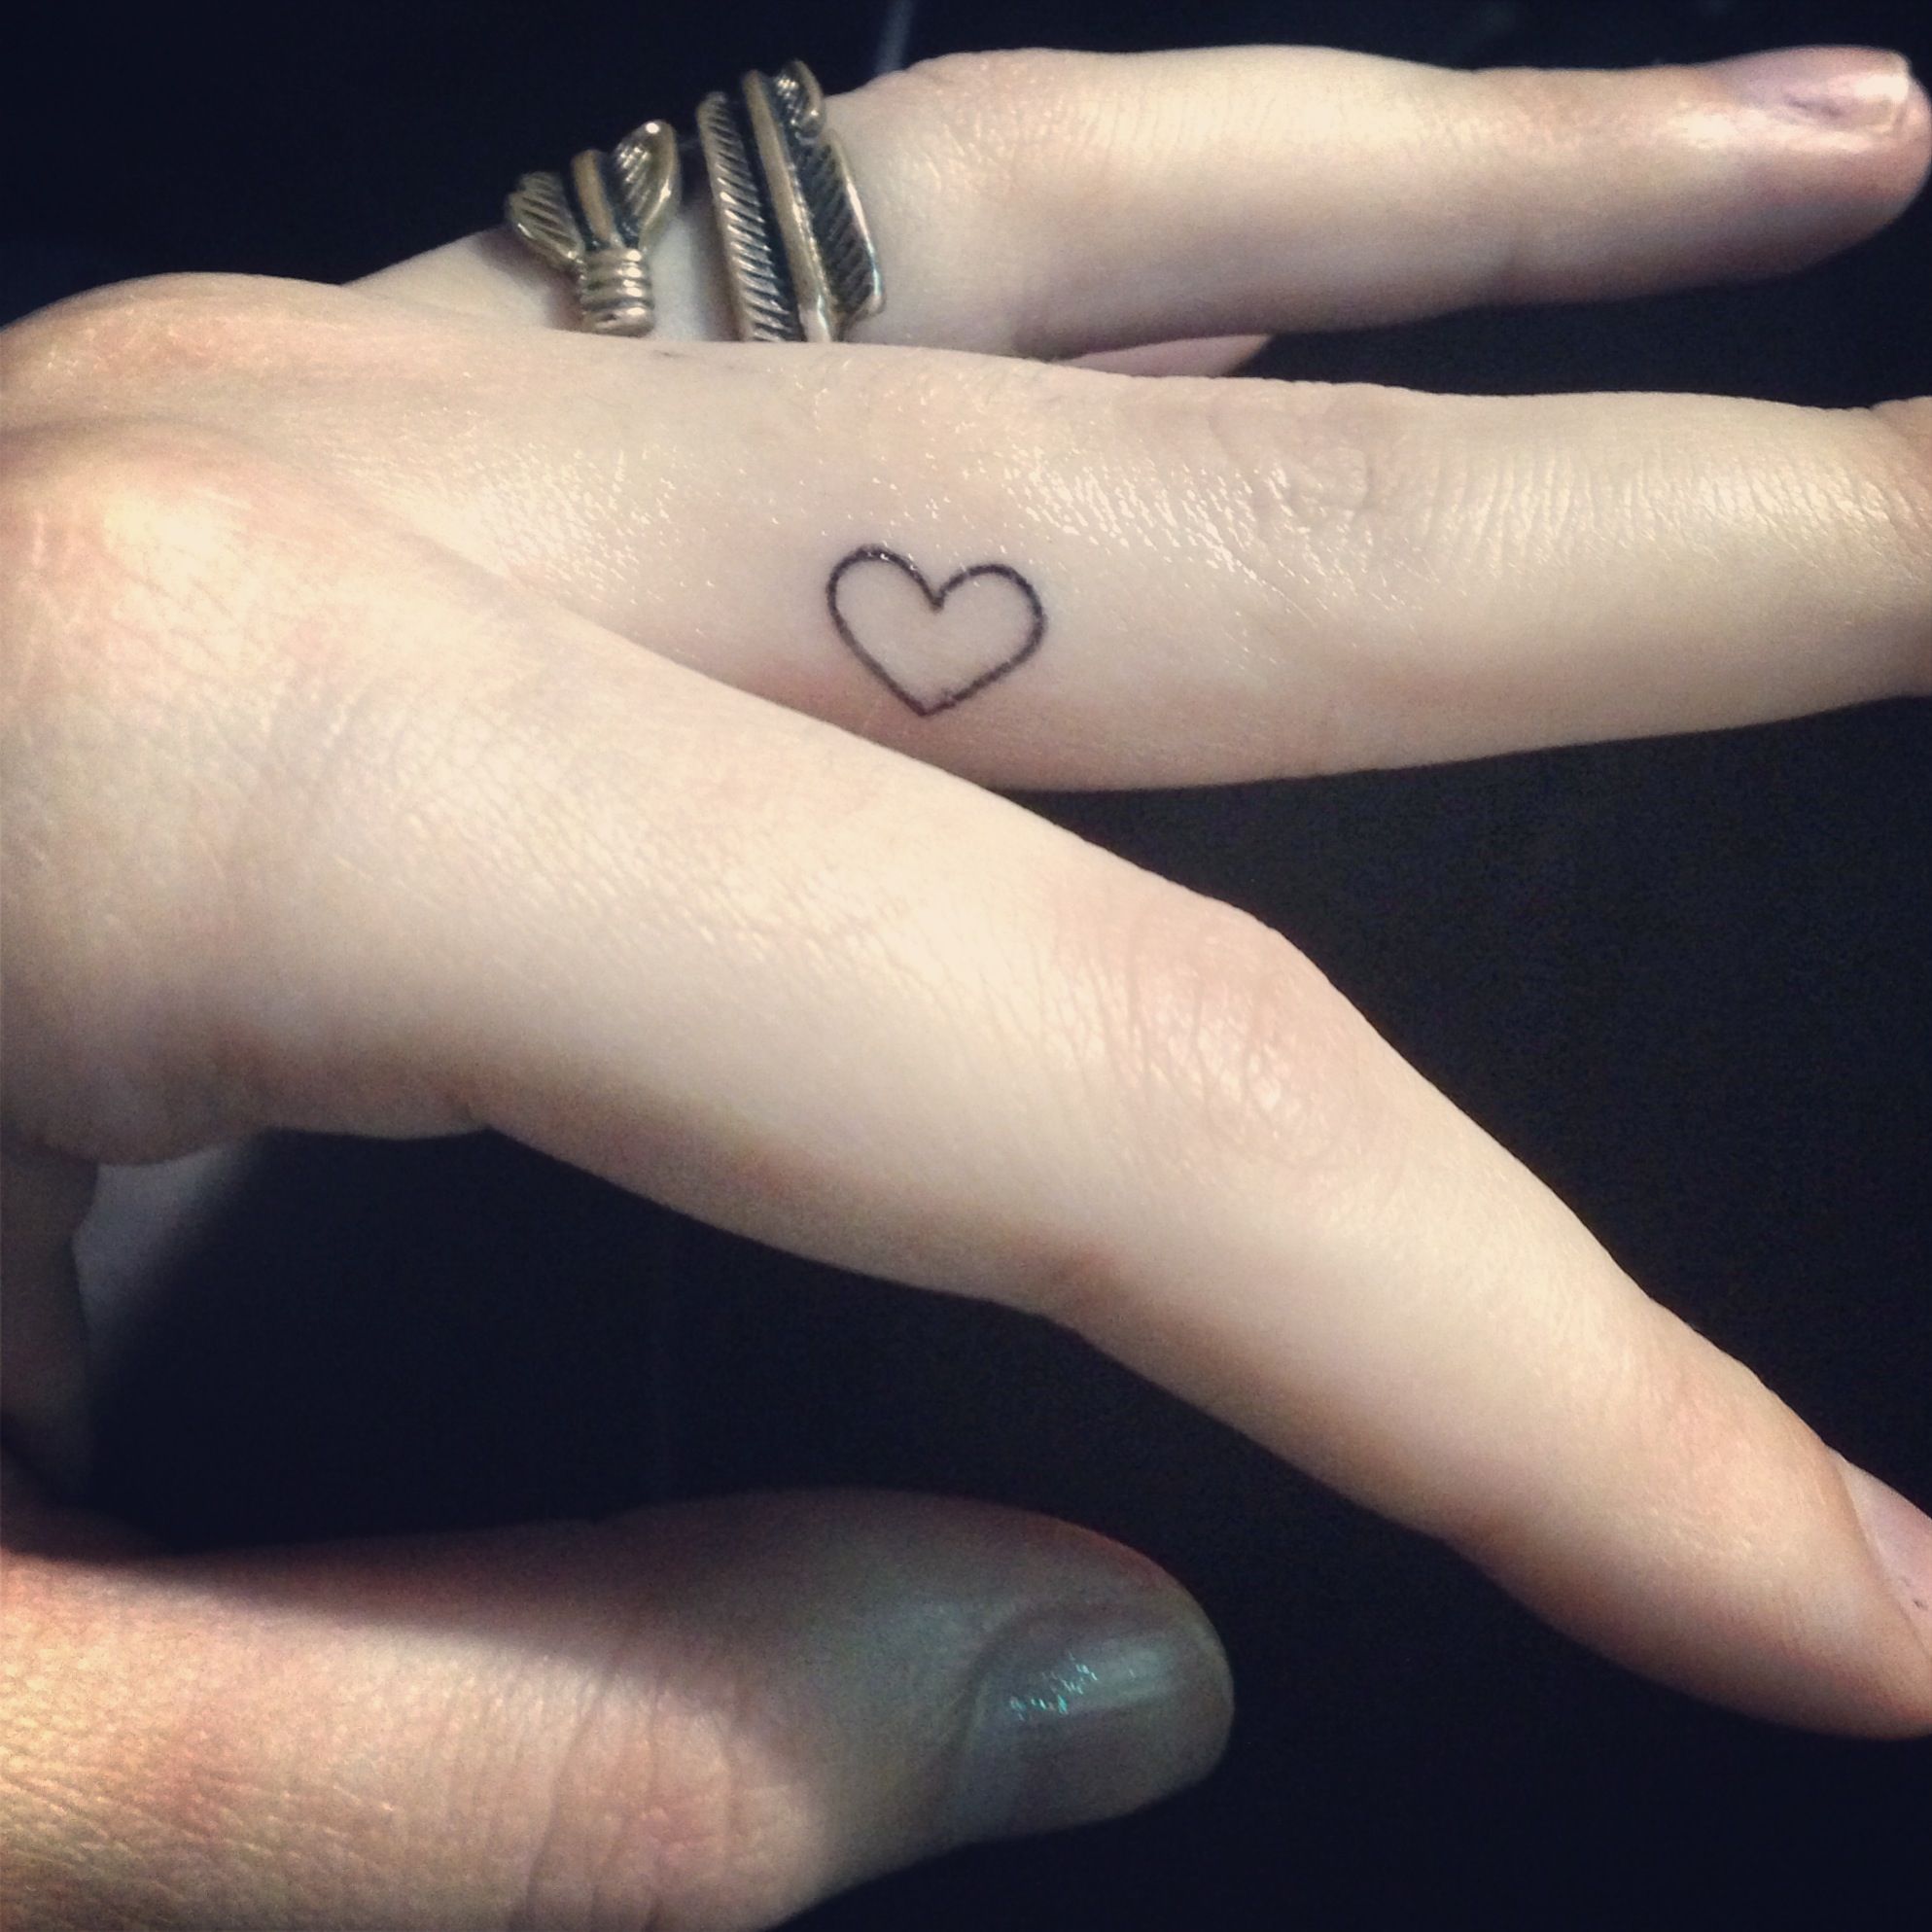 Finger Tattoos For Girls,Finger Tattoo For Girls